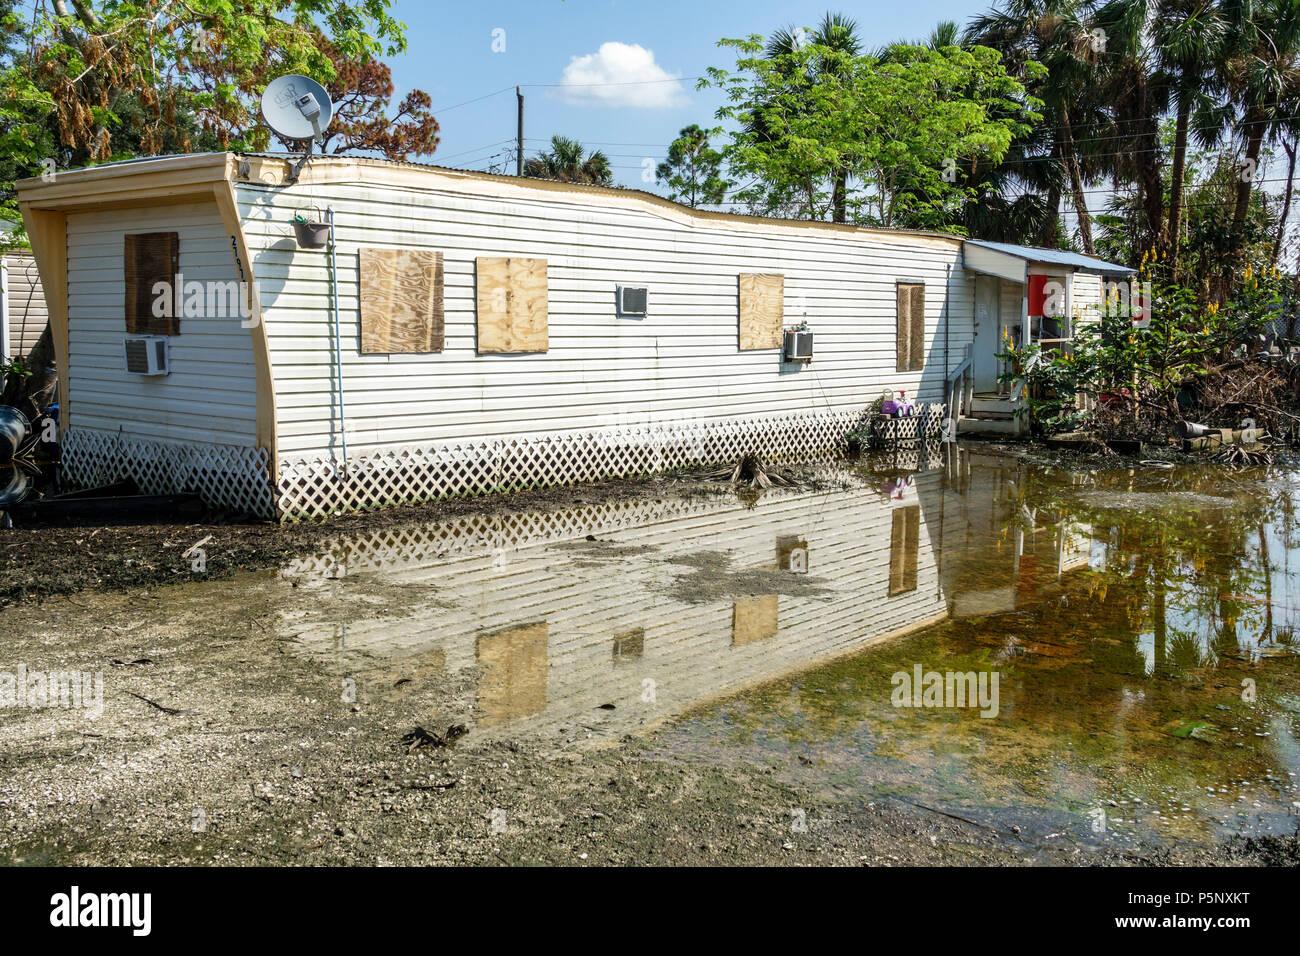 Florida, Bonita Springs, nach dem Hurrikan Irma Sturm Wasserschäden Zerstörung nach, Überschwemmungen, Mobilpark Wohnwagen nach Hause, FL170925156 Stockfoto